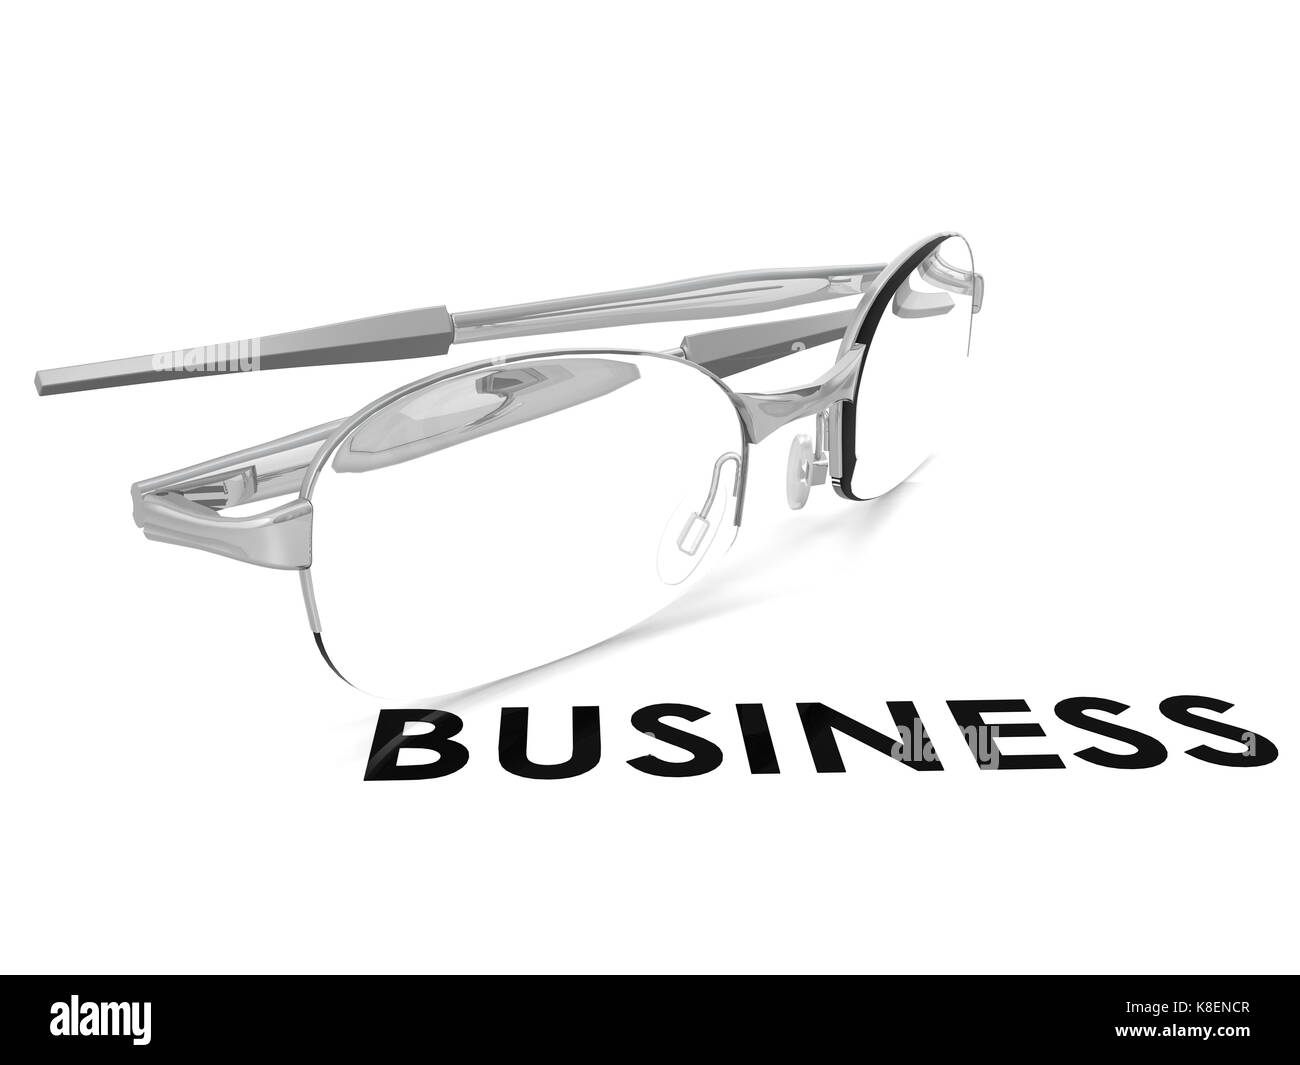 Spettacolo di business con immagine hi-res resa grafica che può essere utilizzata per qualsiasi graphic design. Foto Stock